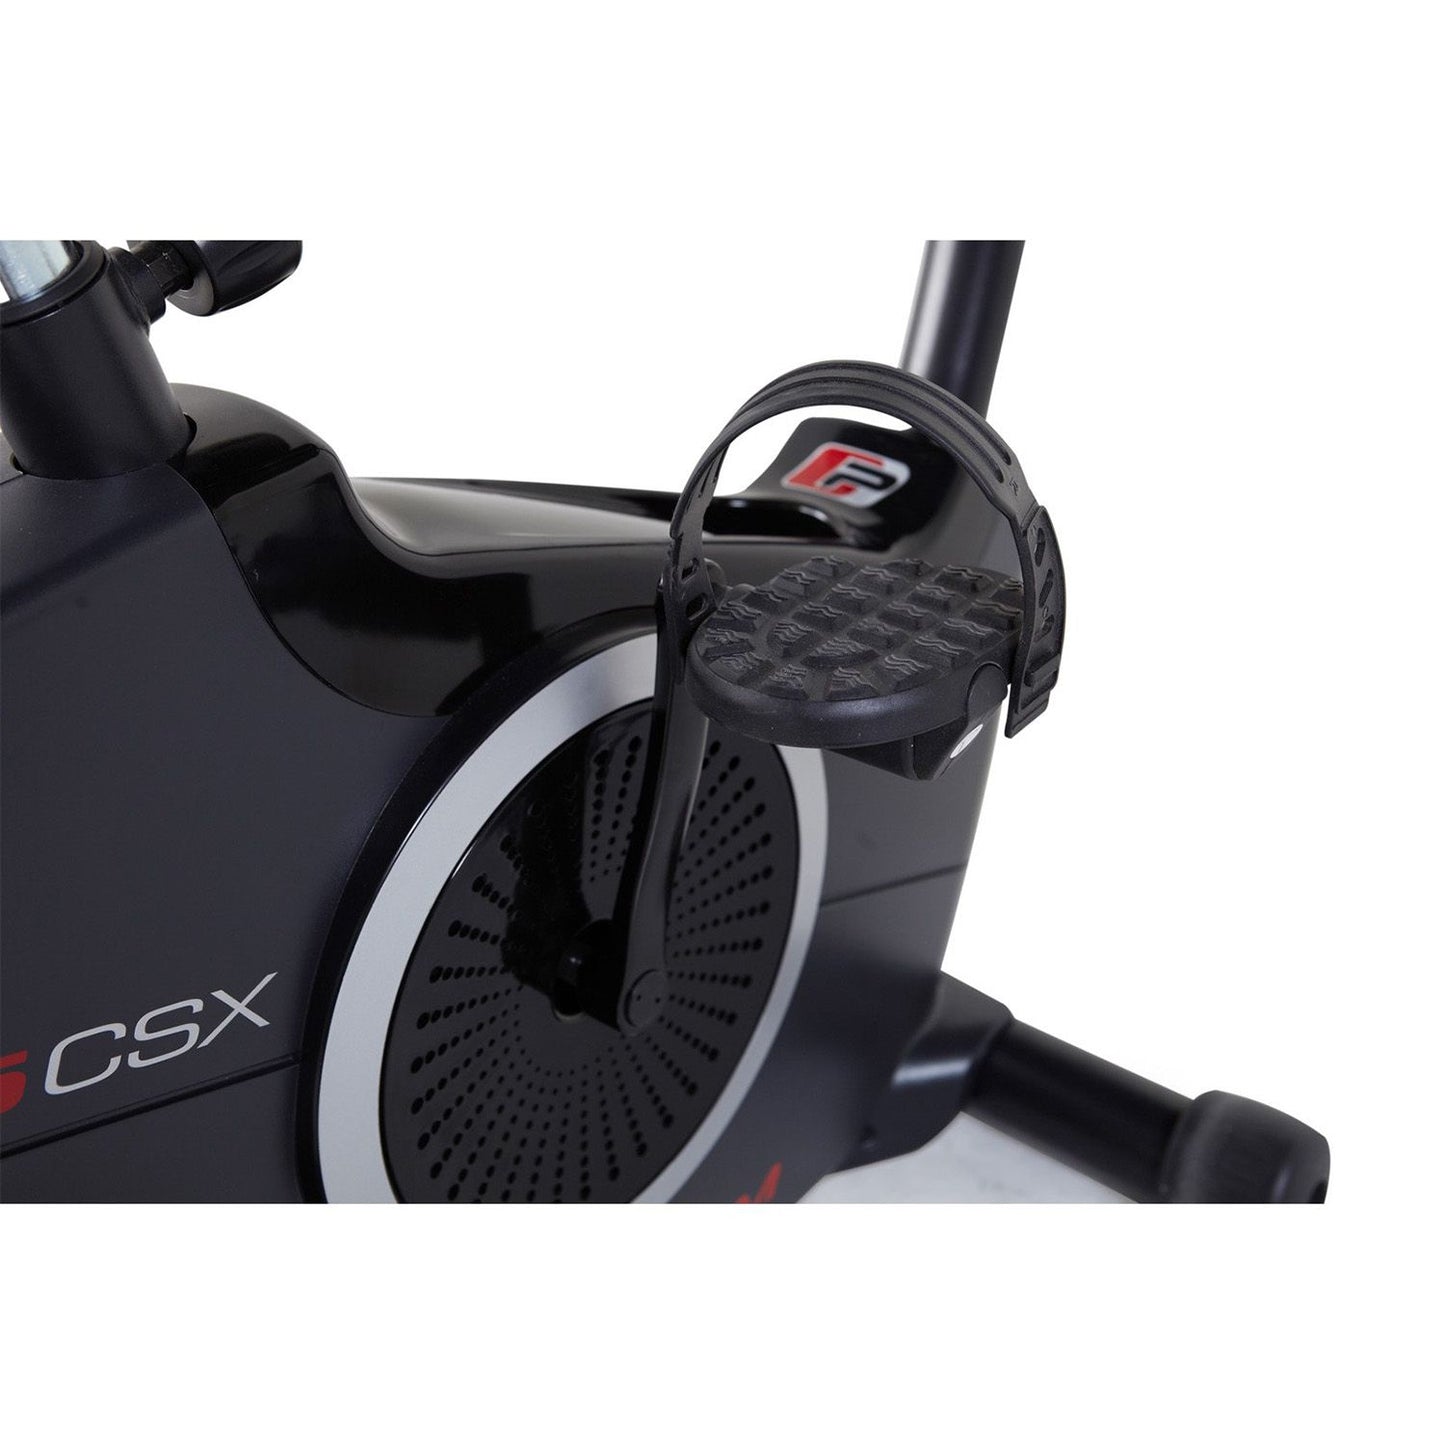 Proform 225 CSX Upright Exercise Bike | Prosportsae